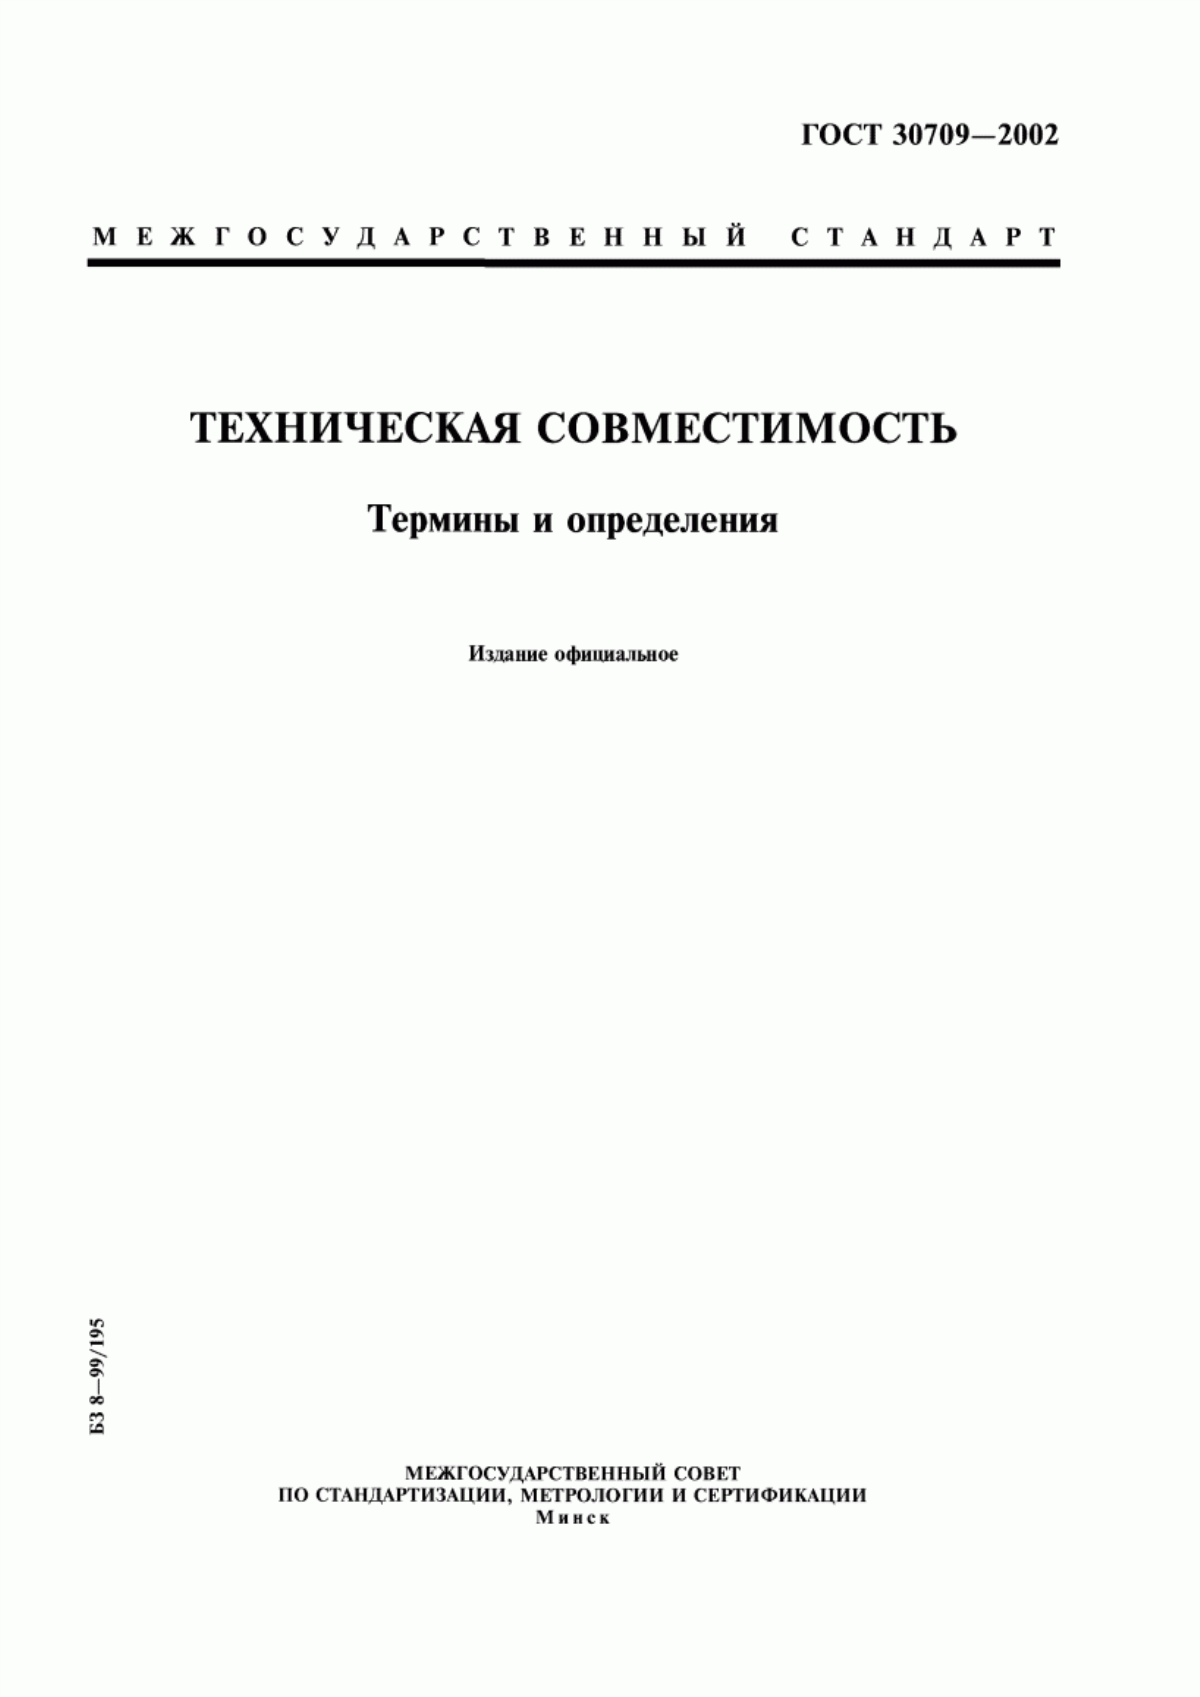 ГОСТ 30709-2002 Техническая совместимость. Термины и определения